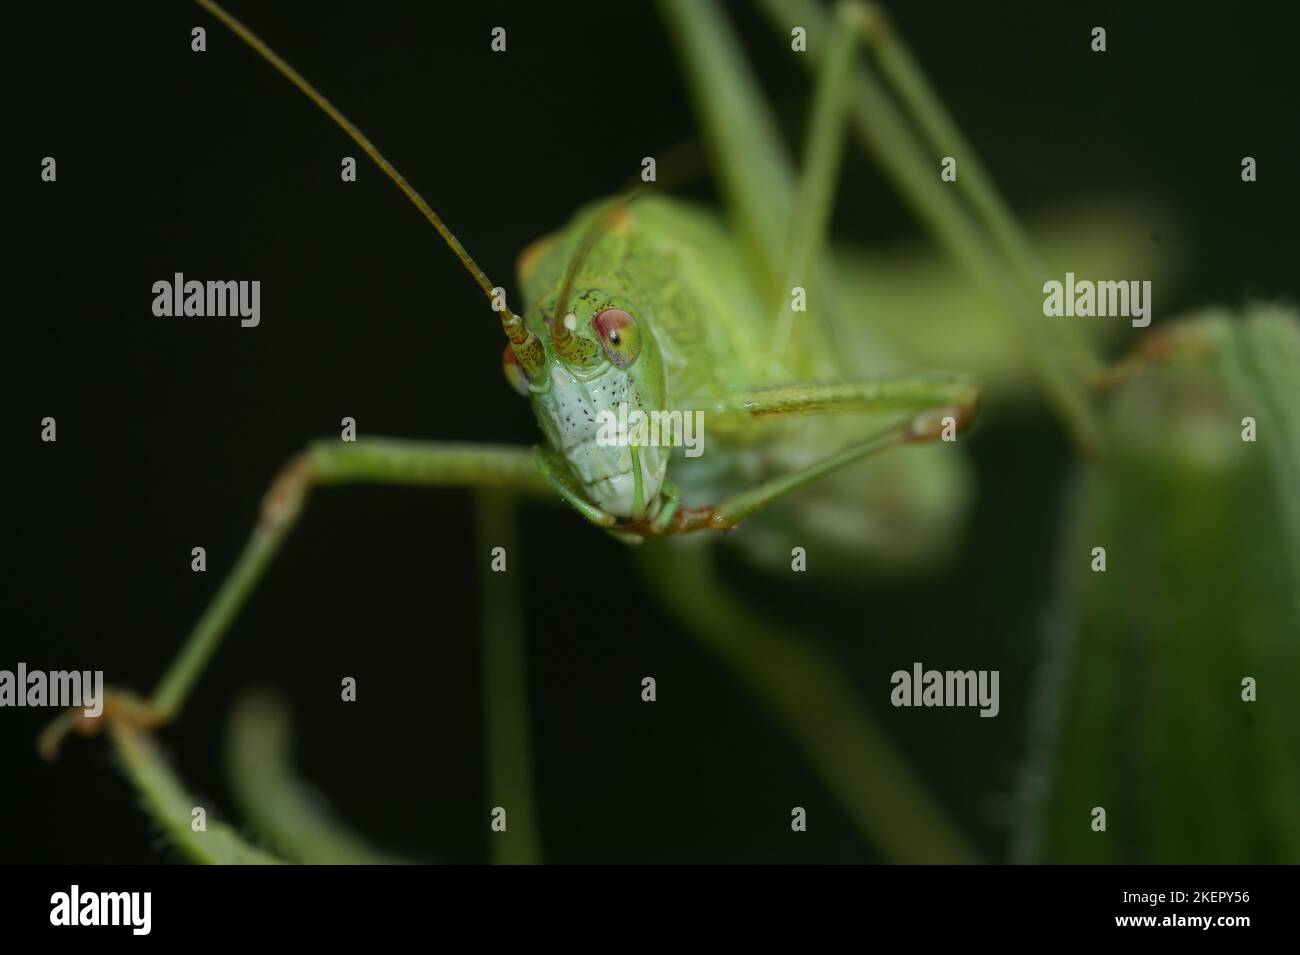 Gros plan frontal sur un Bush-Cricket vert brillant à faucille, Phaneroptera falcata dans la végétation sur fond sombre Banque D'Images